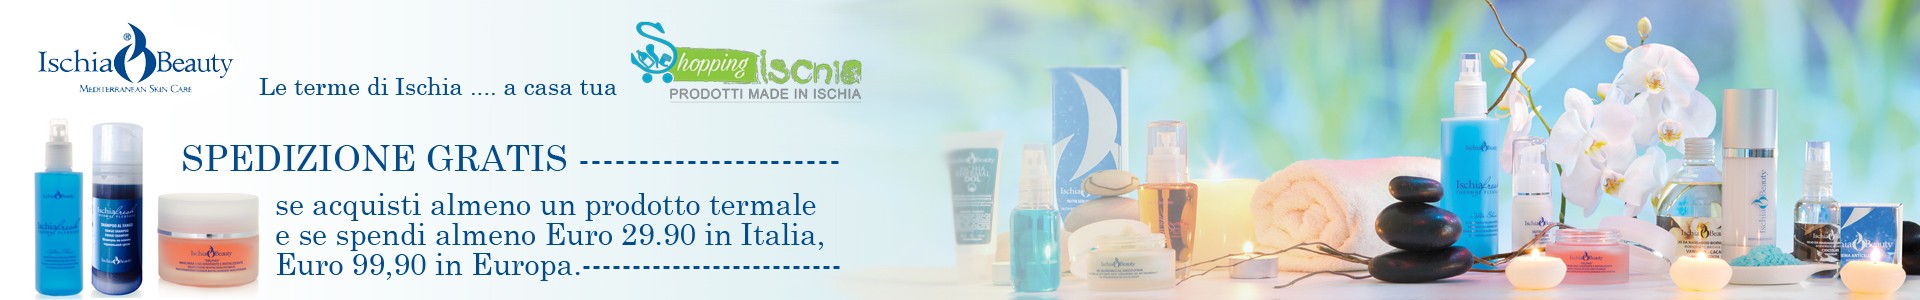 Acquista i prodotti termali Ischia beauty, spedizioni gratuite per acquisti superiori ai 29.00 euro per l'italia, euro 99,00 per l'Europa.